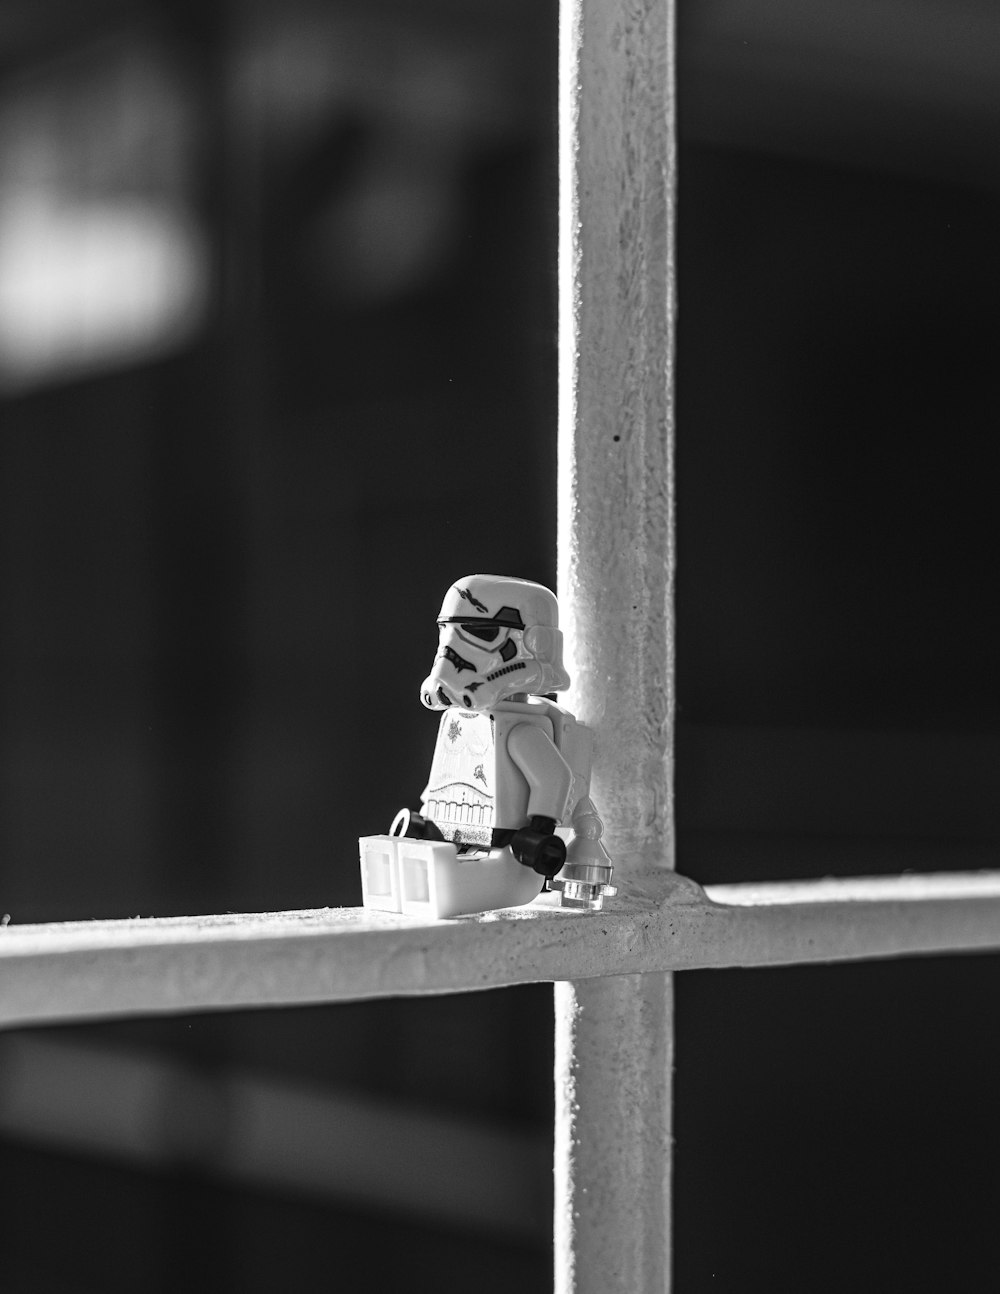 Foto in scala di grigi della mini figura LEGO su staccionata di legno